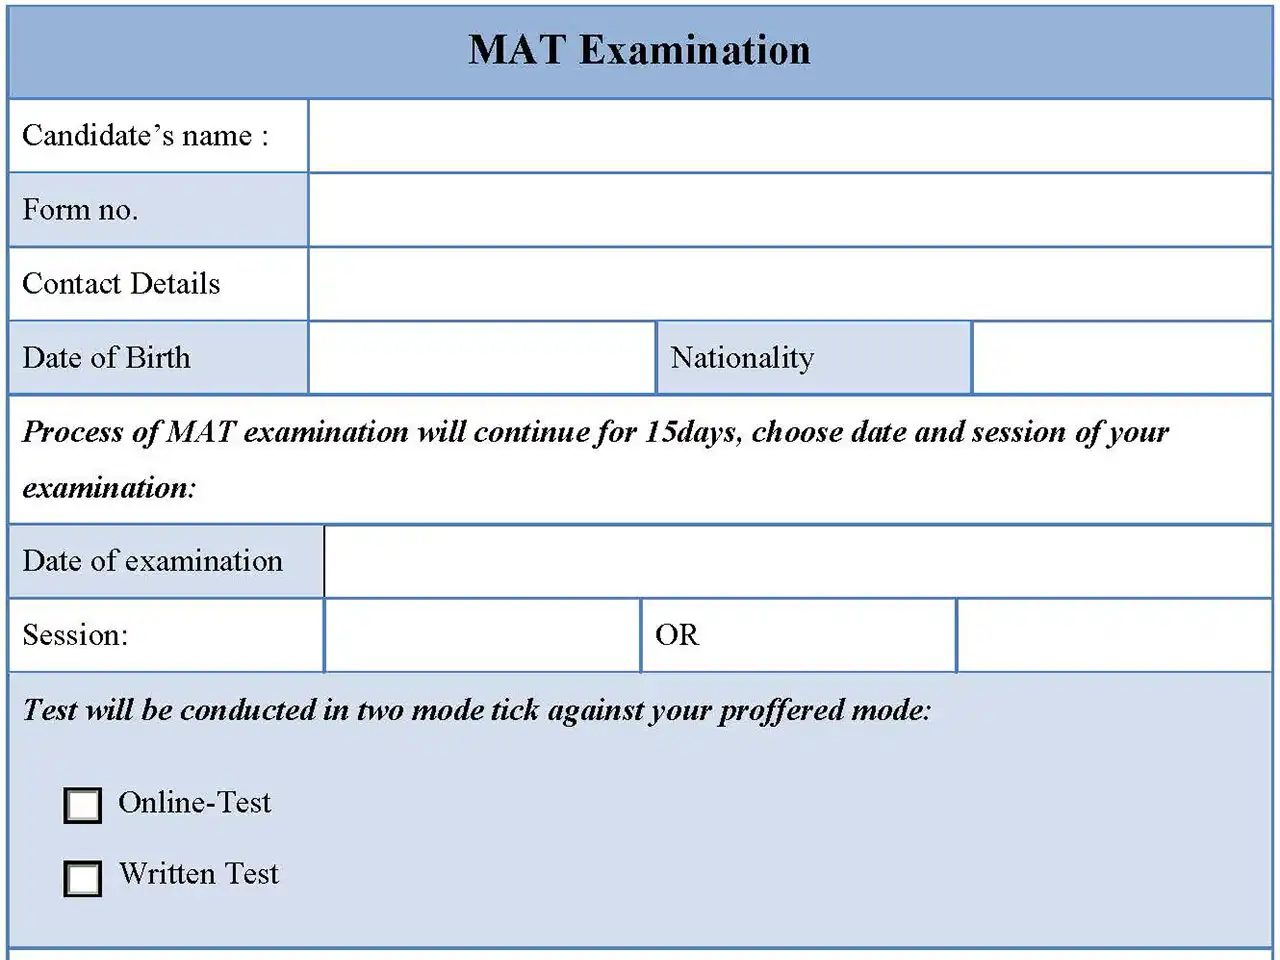 MAT Examination Form